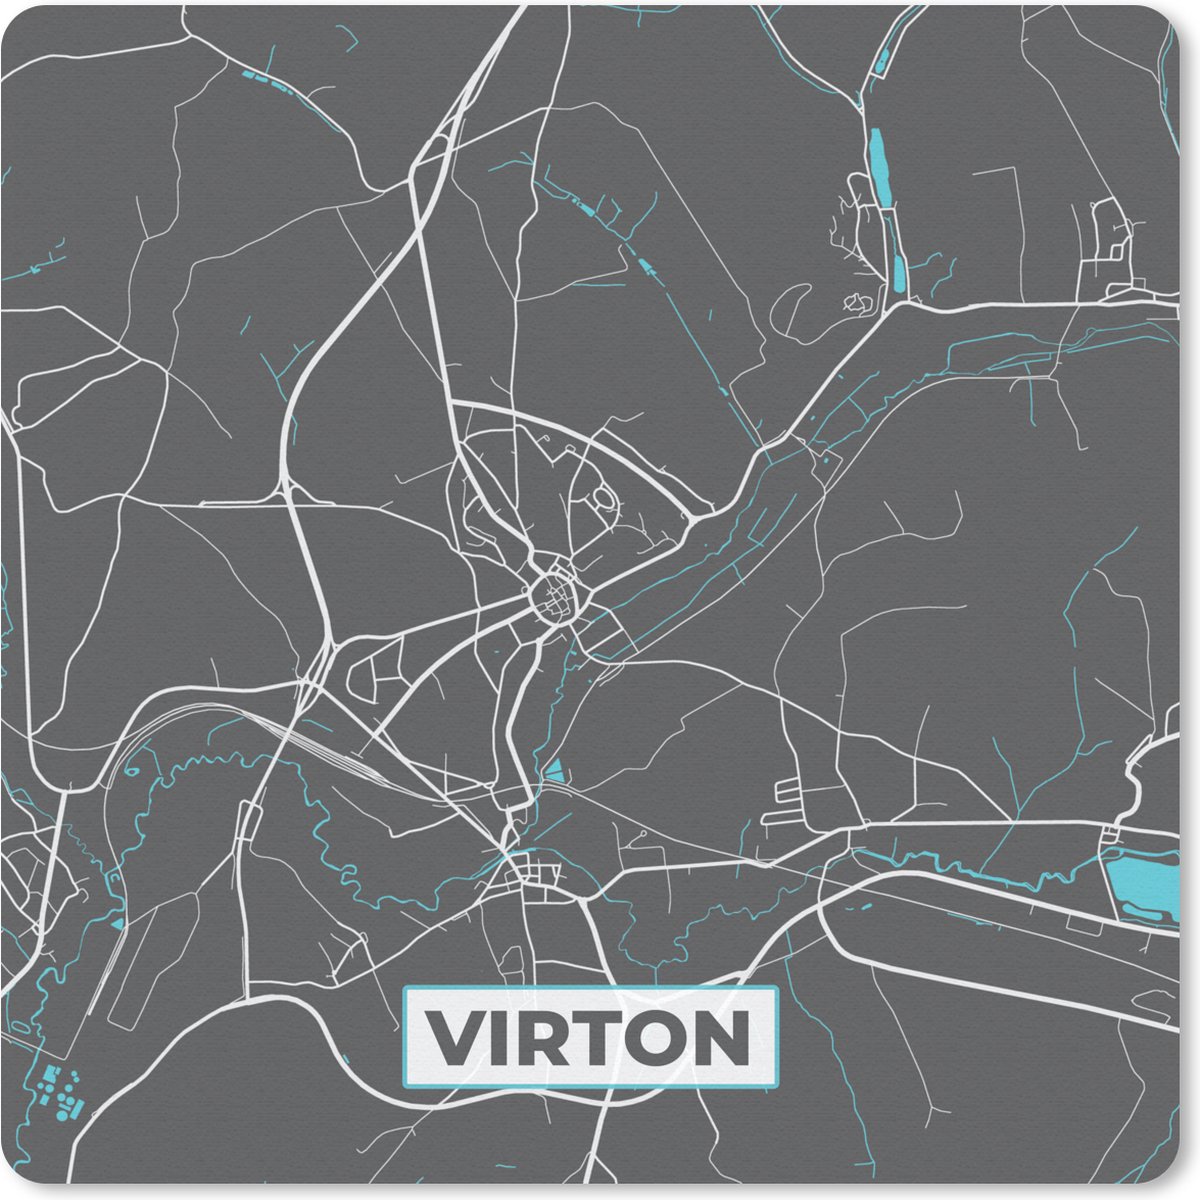 Muismat - Mousepad - Stadskaart – Grijs - Kaart – Virton – België – Plattegrond - 30x30 cm - Muismatten